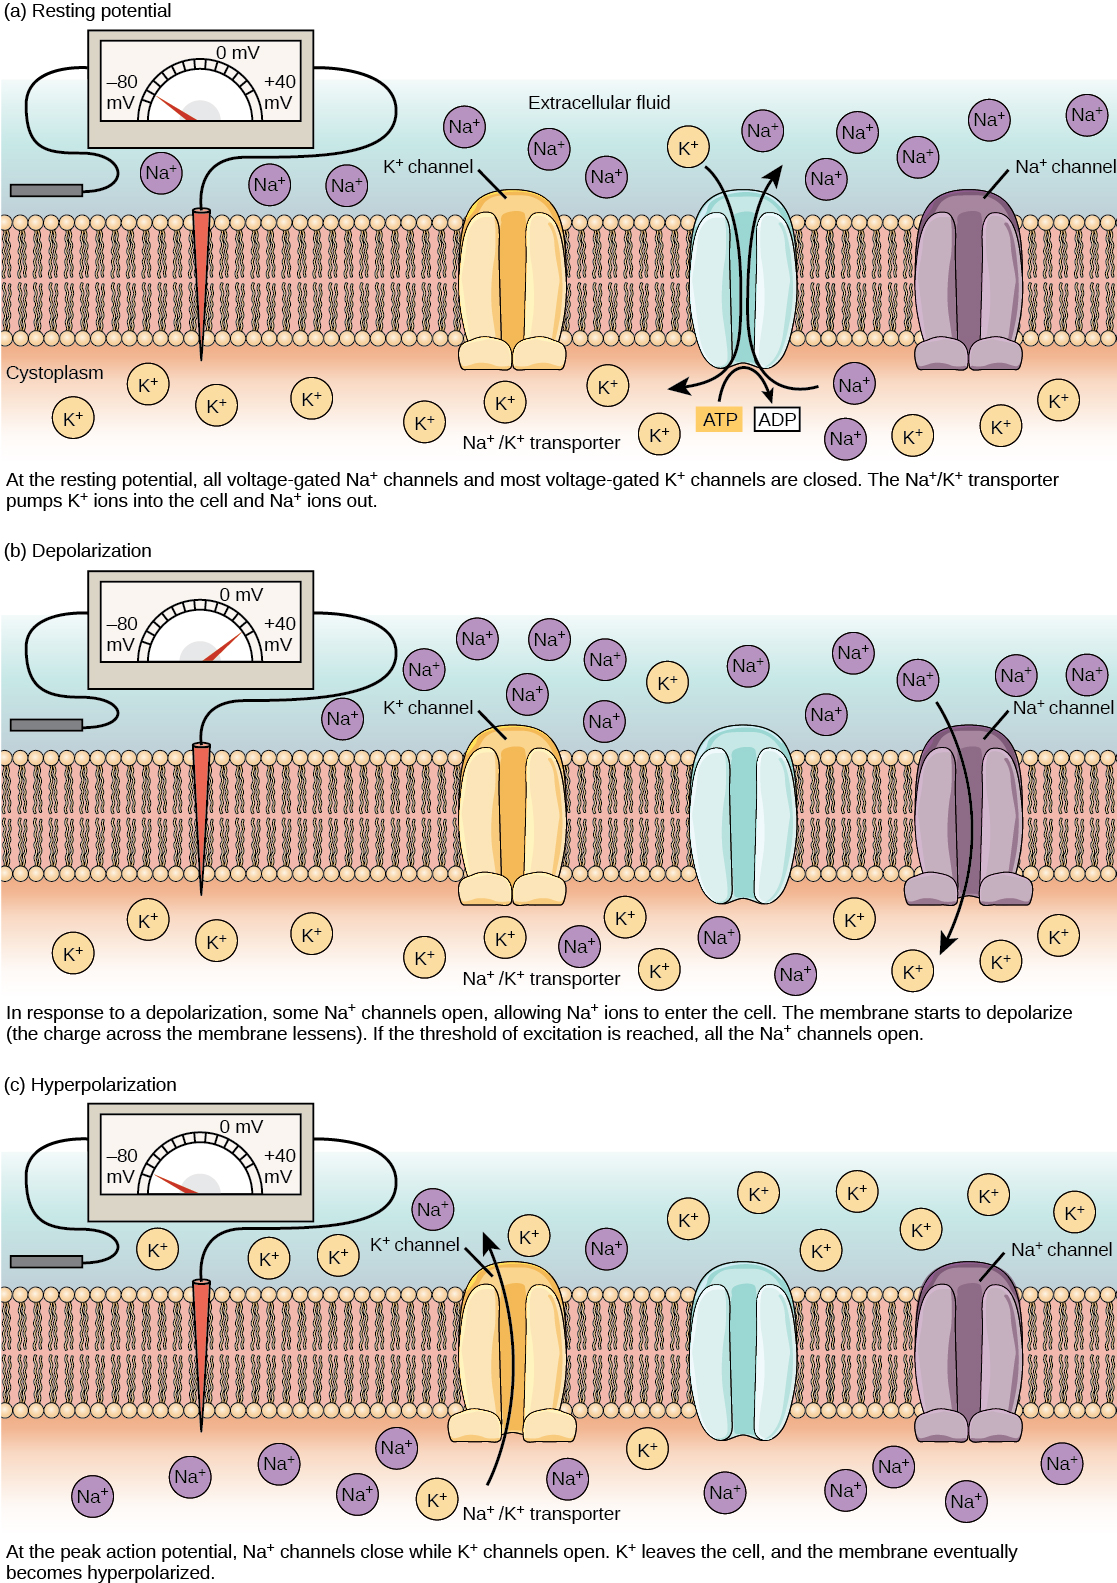 El potencial de membrana en reposo de menos setenta voltios es mantenido por un transportador de sodio/potasio que transporta los iones de sodio fuera de la célula y los iones de potasio en. Los canales de sodio y potasio controlados por voltaje están cerrados. En respuesta a un impulso nervioso, algunos canales de sodio se abren, permitiendo que los iones de sodio ingresen a la célula. La membrana comienza a despolarizarse; en otras palabras, la carga a través de la membrana disminuye. Si el potencial de membrana aumenta hasta el umbral de excitación, se abren todos los canales de sodio. En el pico potencial de acción, los canales de potasio se abren y los iones de potasio salen de la célula. La membrana eventualmente se vuelve hiperpolarizada.